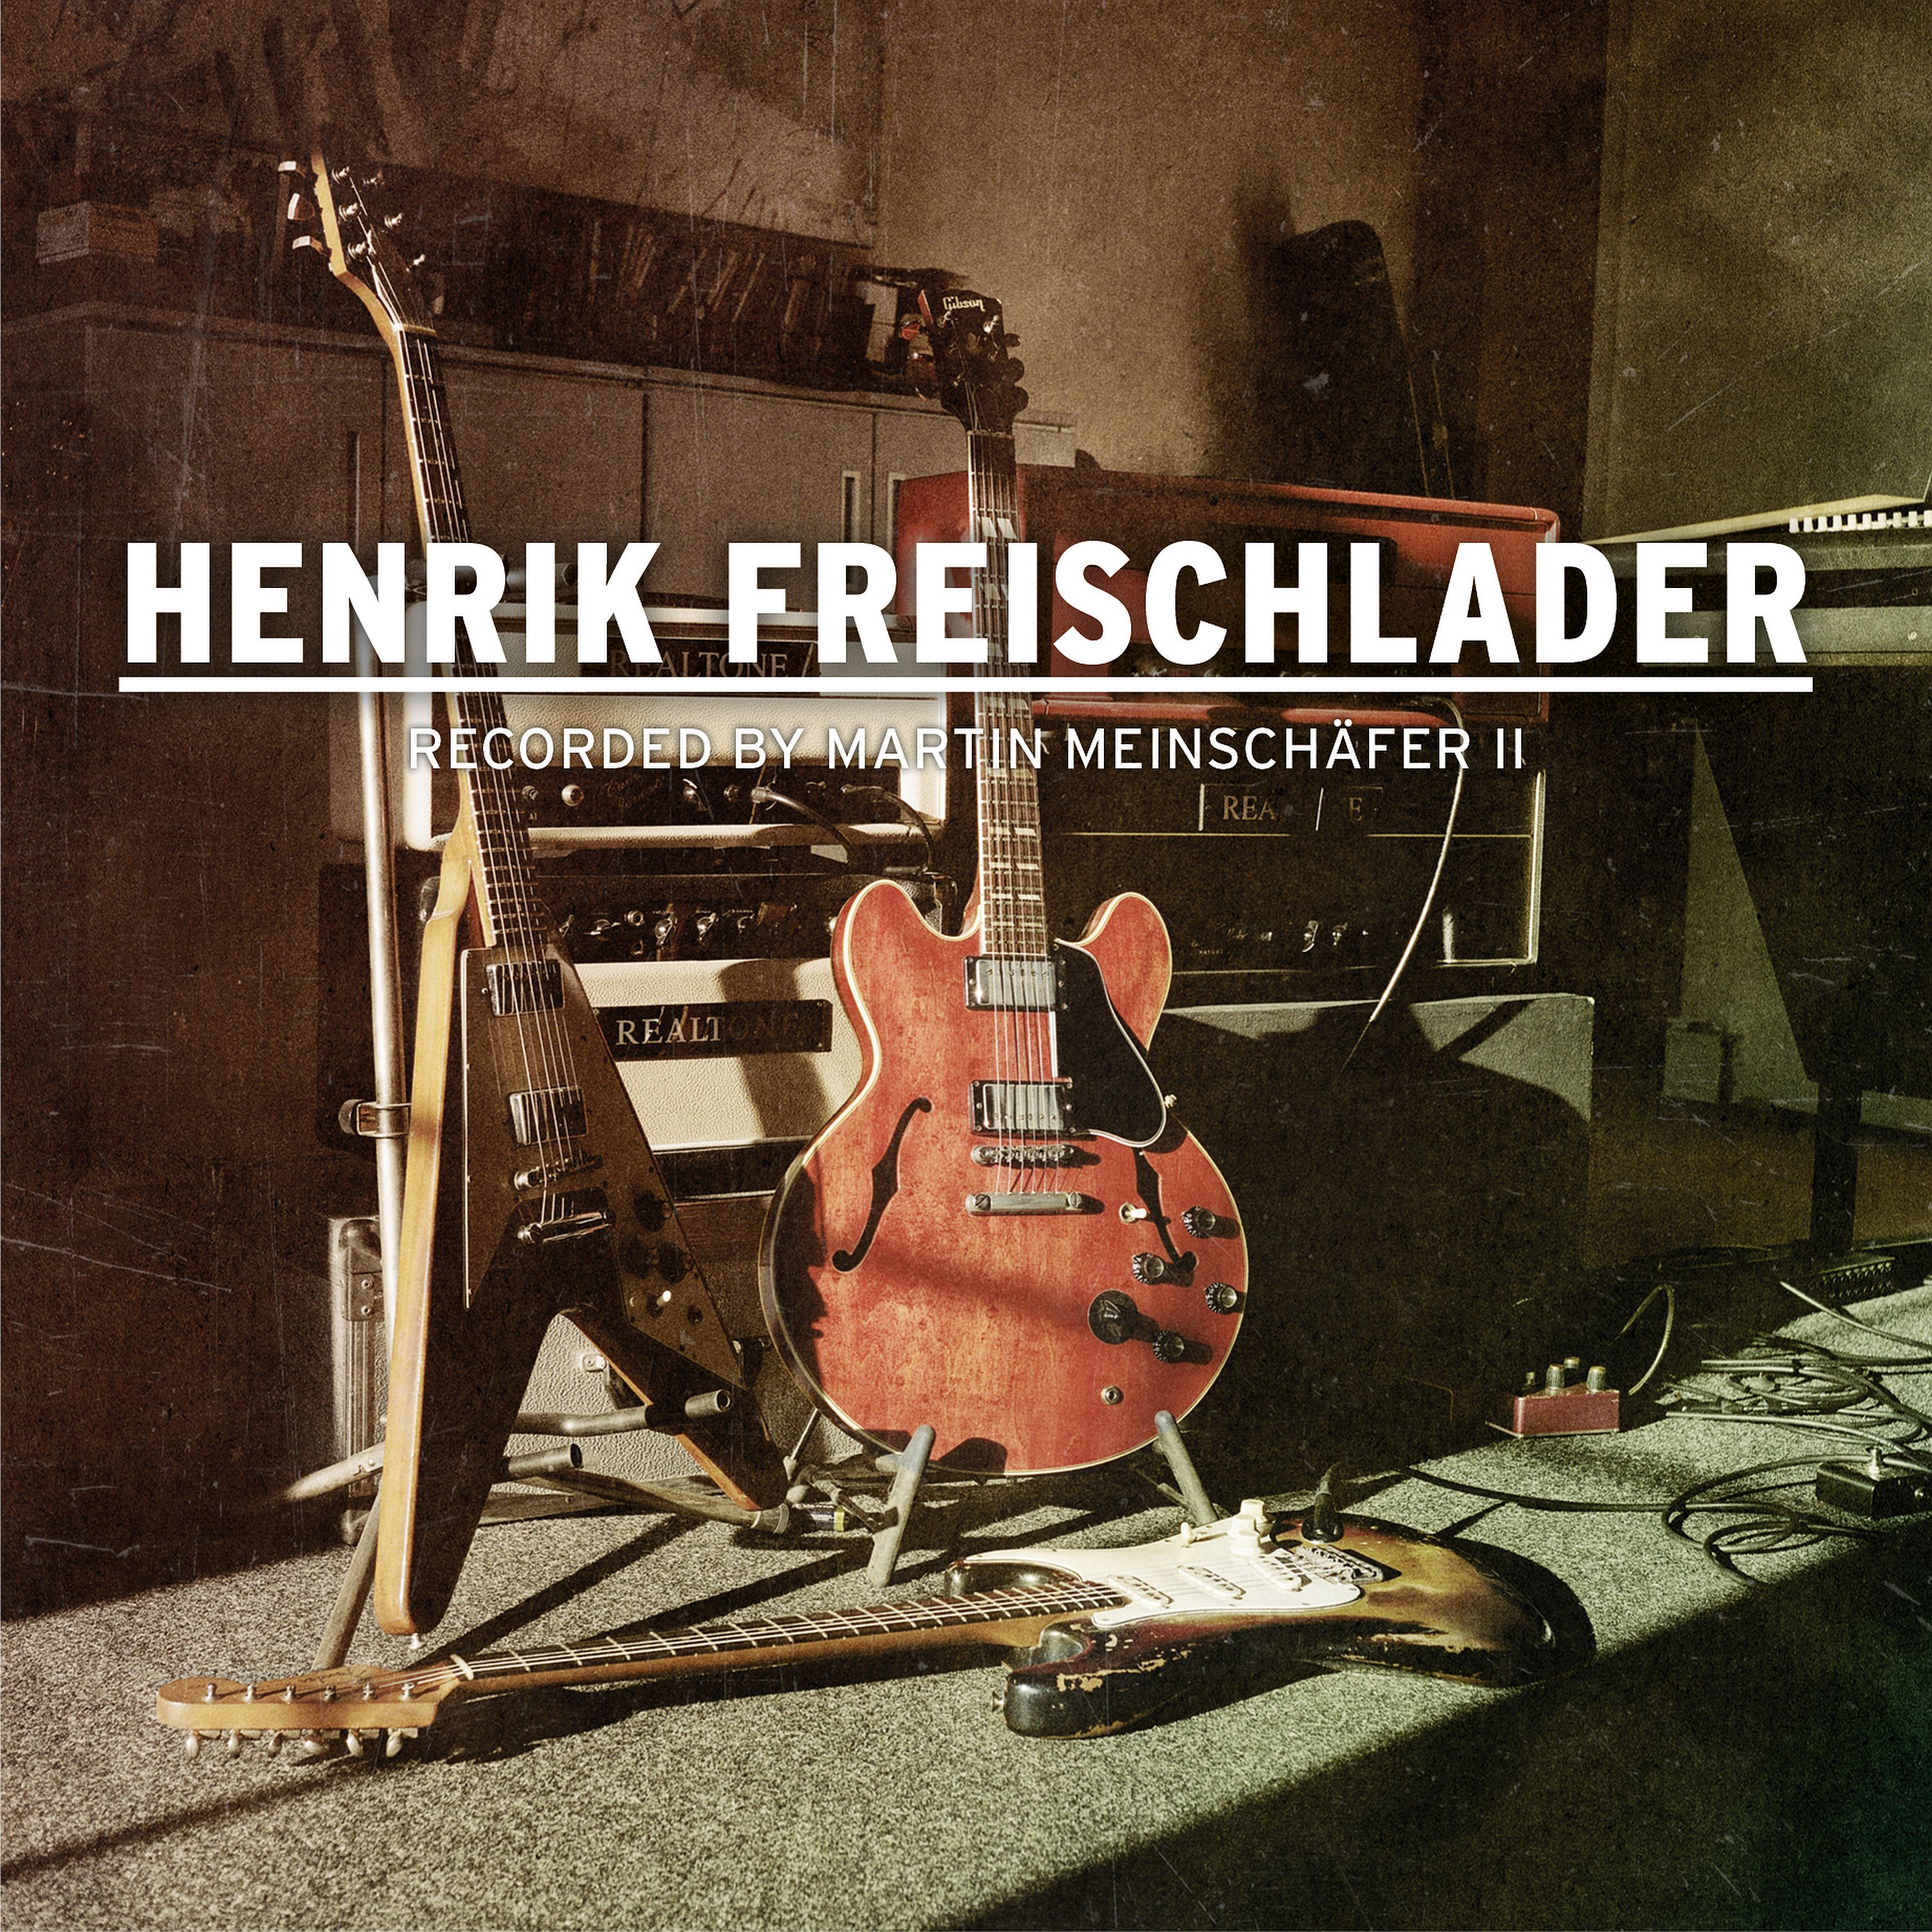 Freischlader, Henrik - Recorded by Martin Meinschäfer II